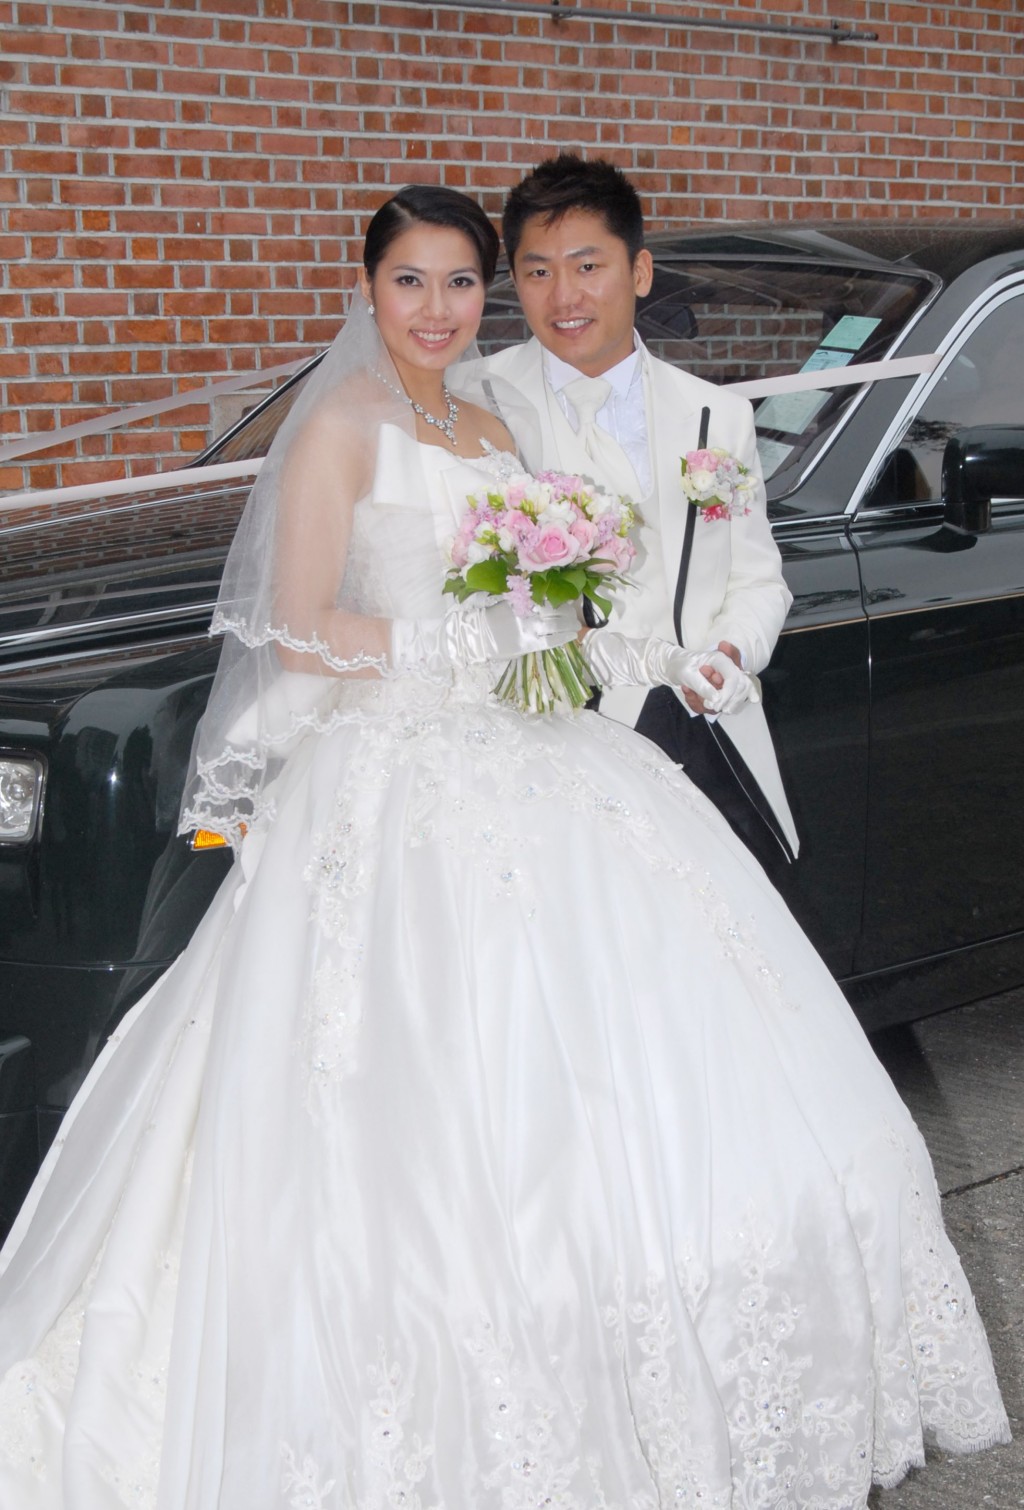 可岚于2010年与从事饮食的圈外男友尤子威举行婚礼。